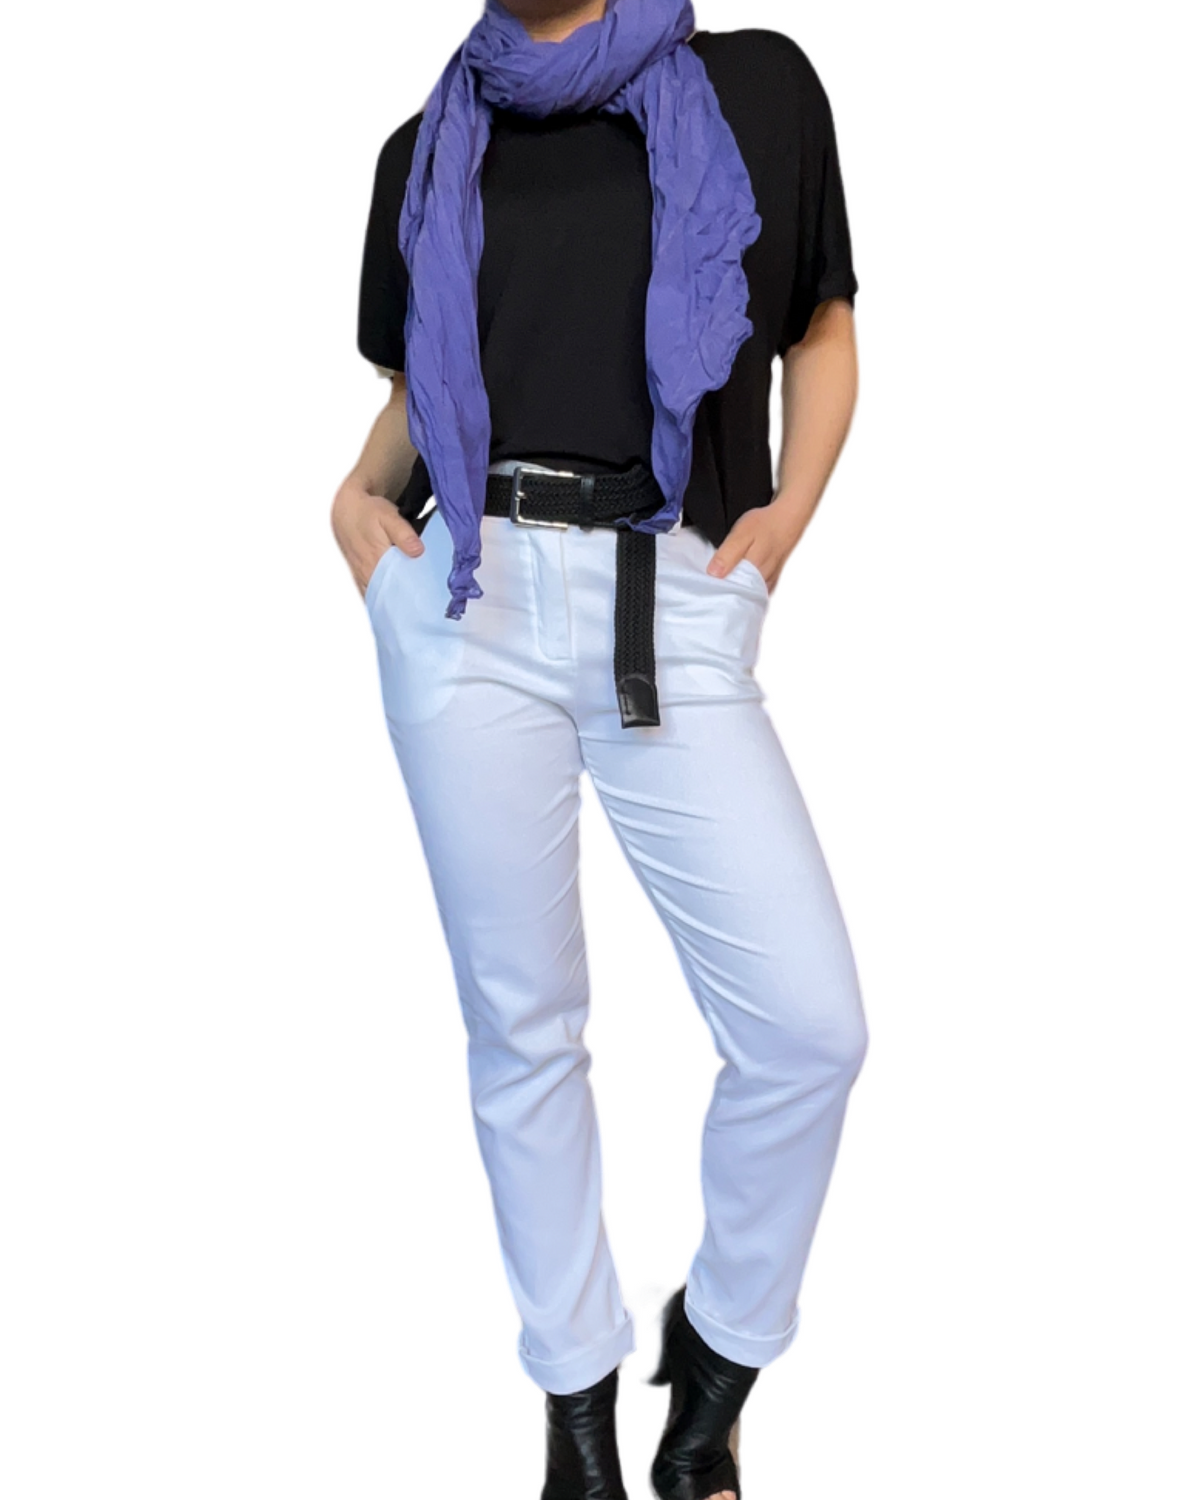 T-shirt couleur unie pour femme avec ceinture noire et foulard mauve.